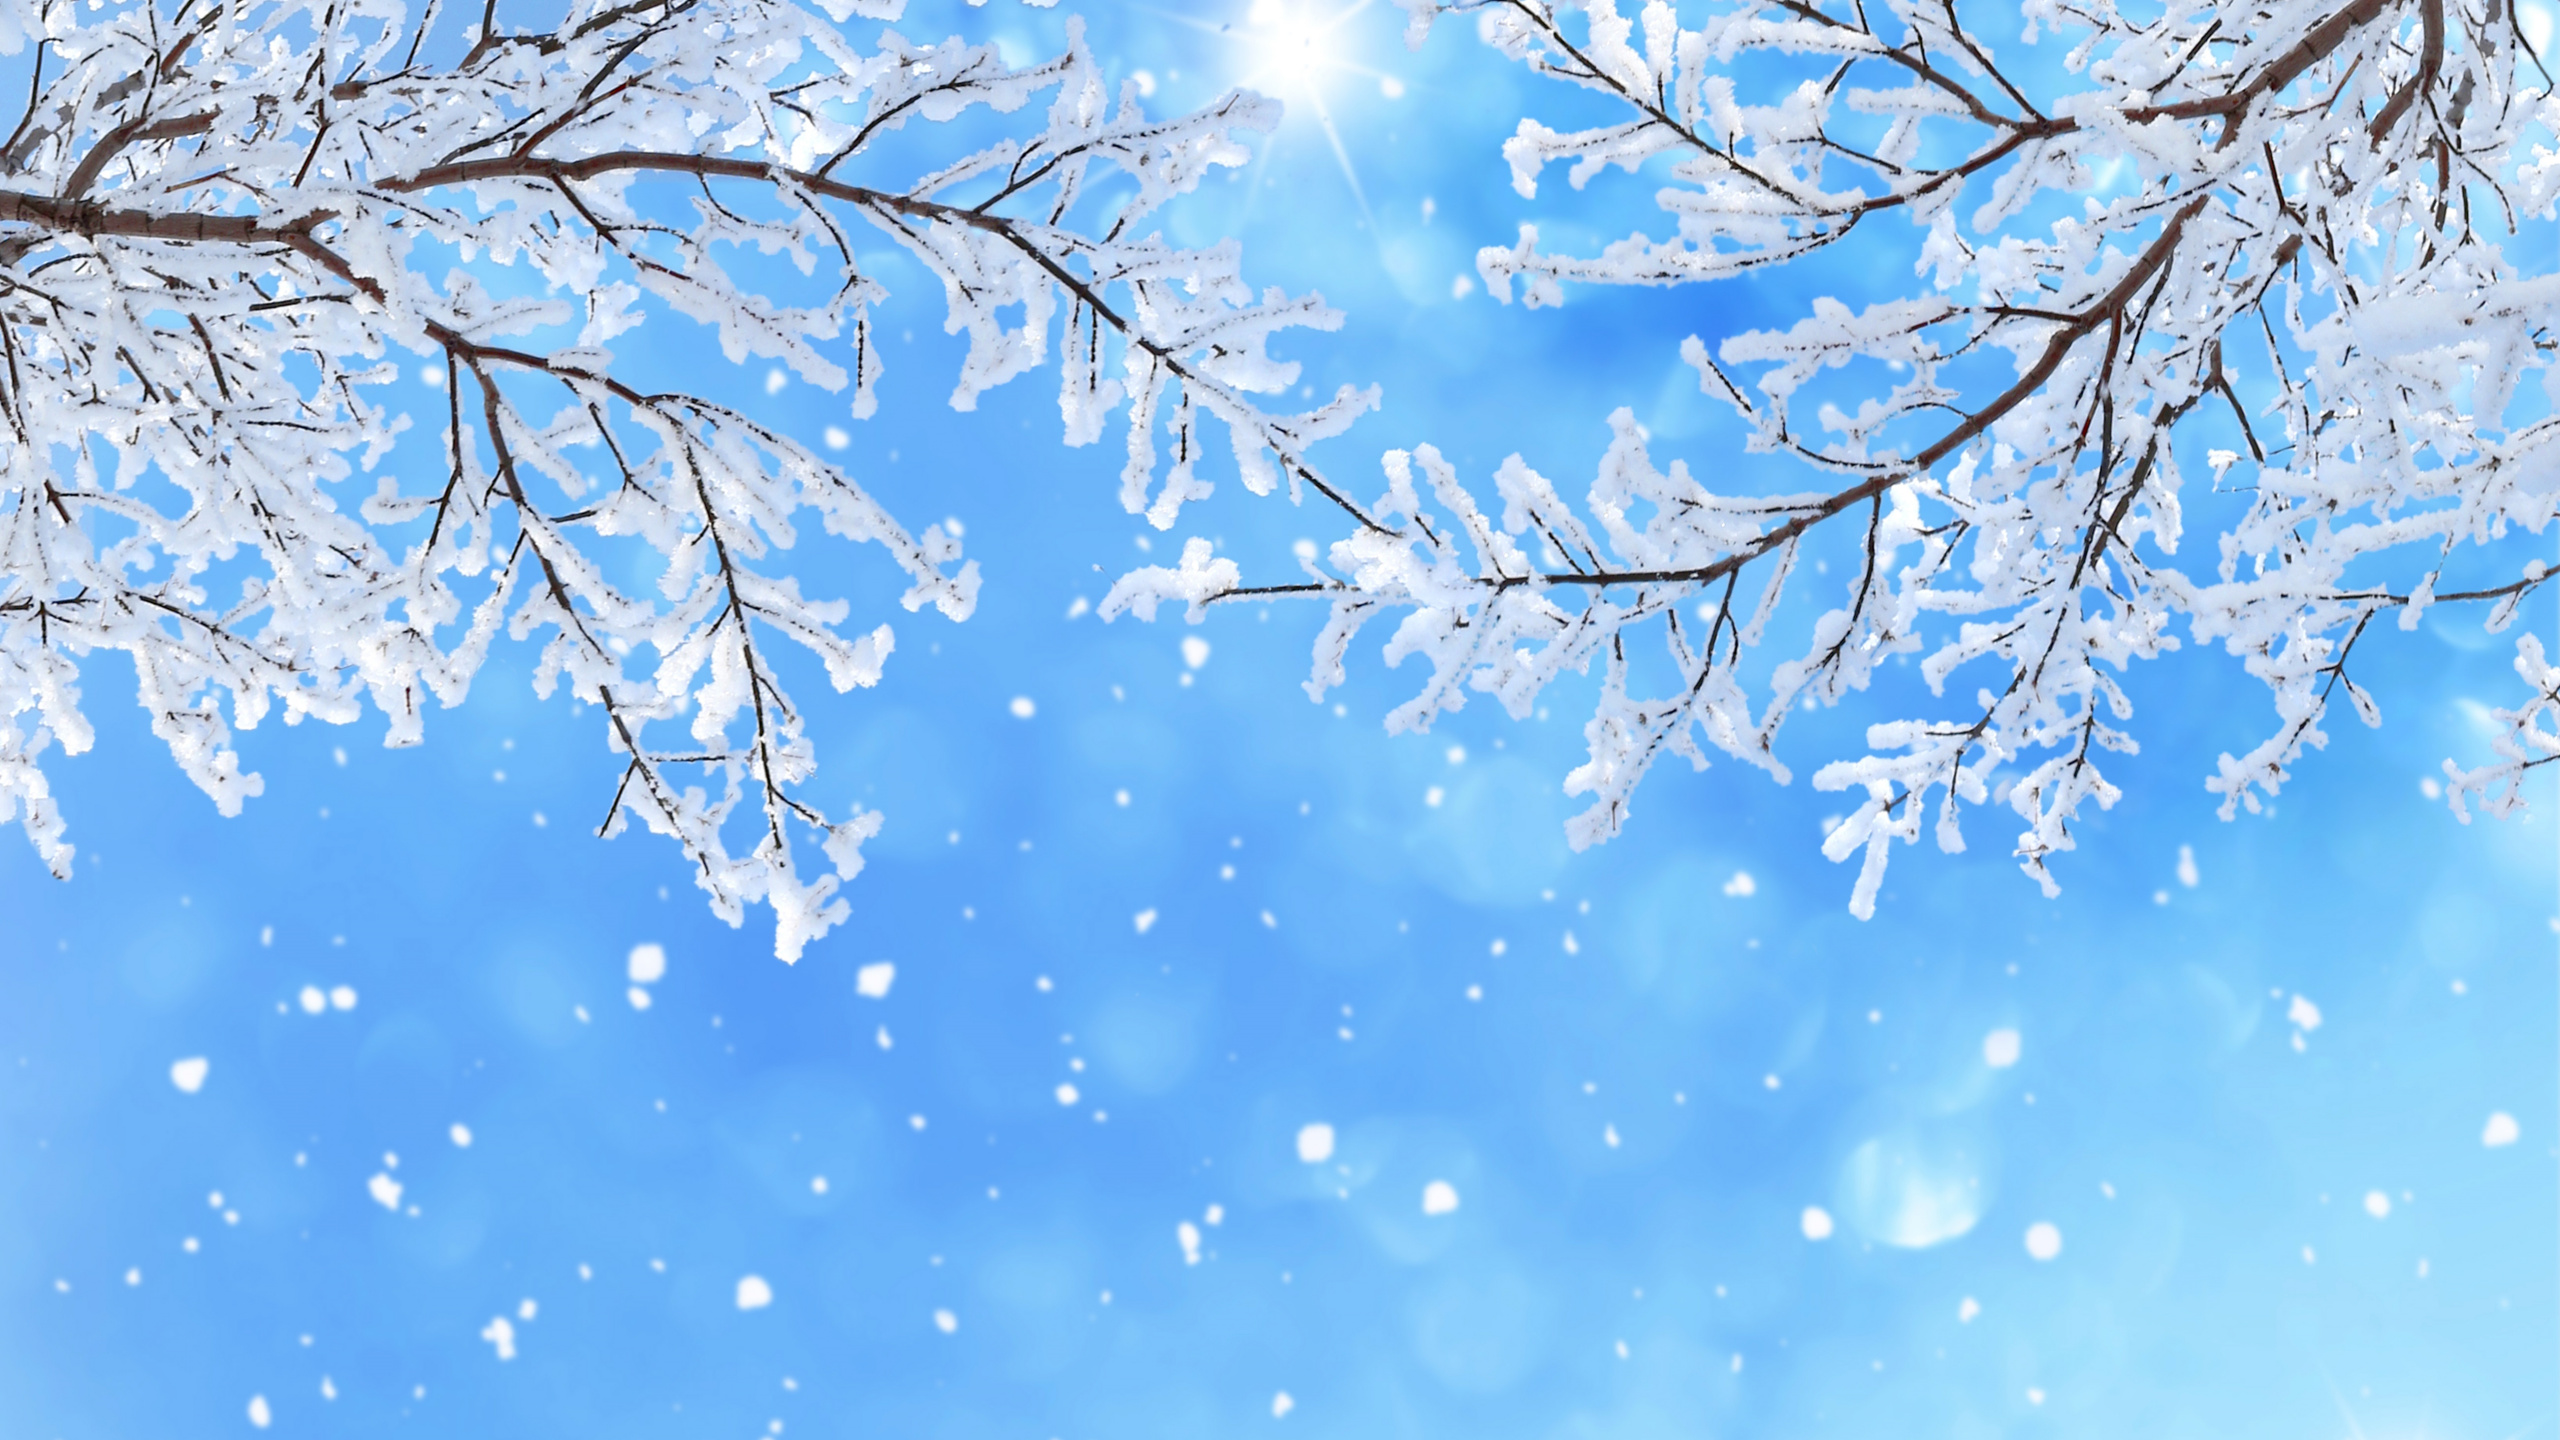 冬天, 季节, 颜色, 开花, 天空 壁纸 2560x1440 允许